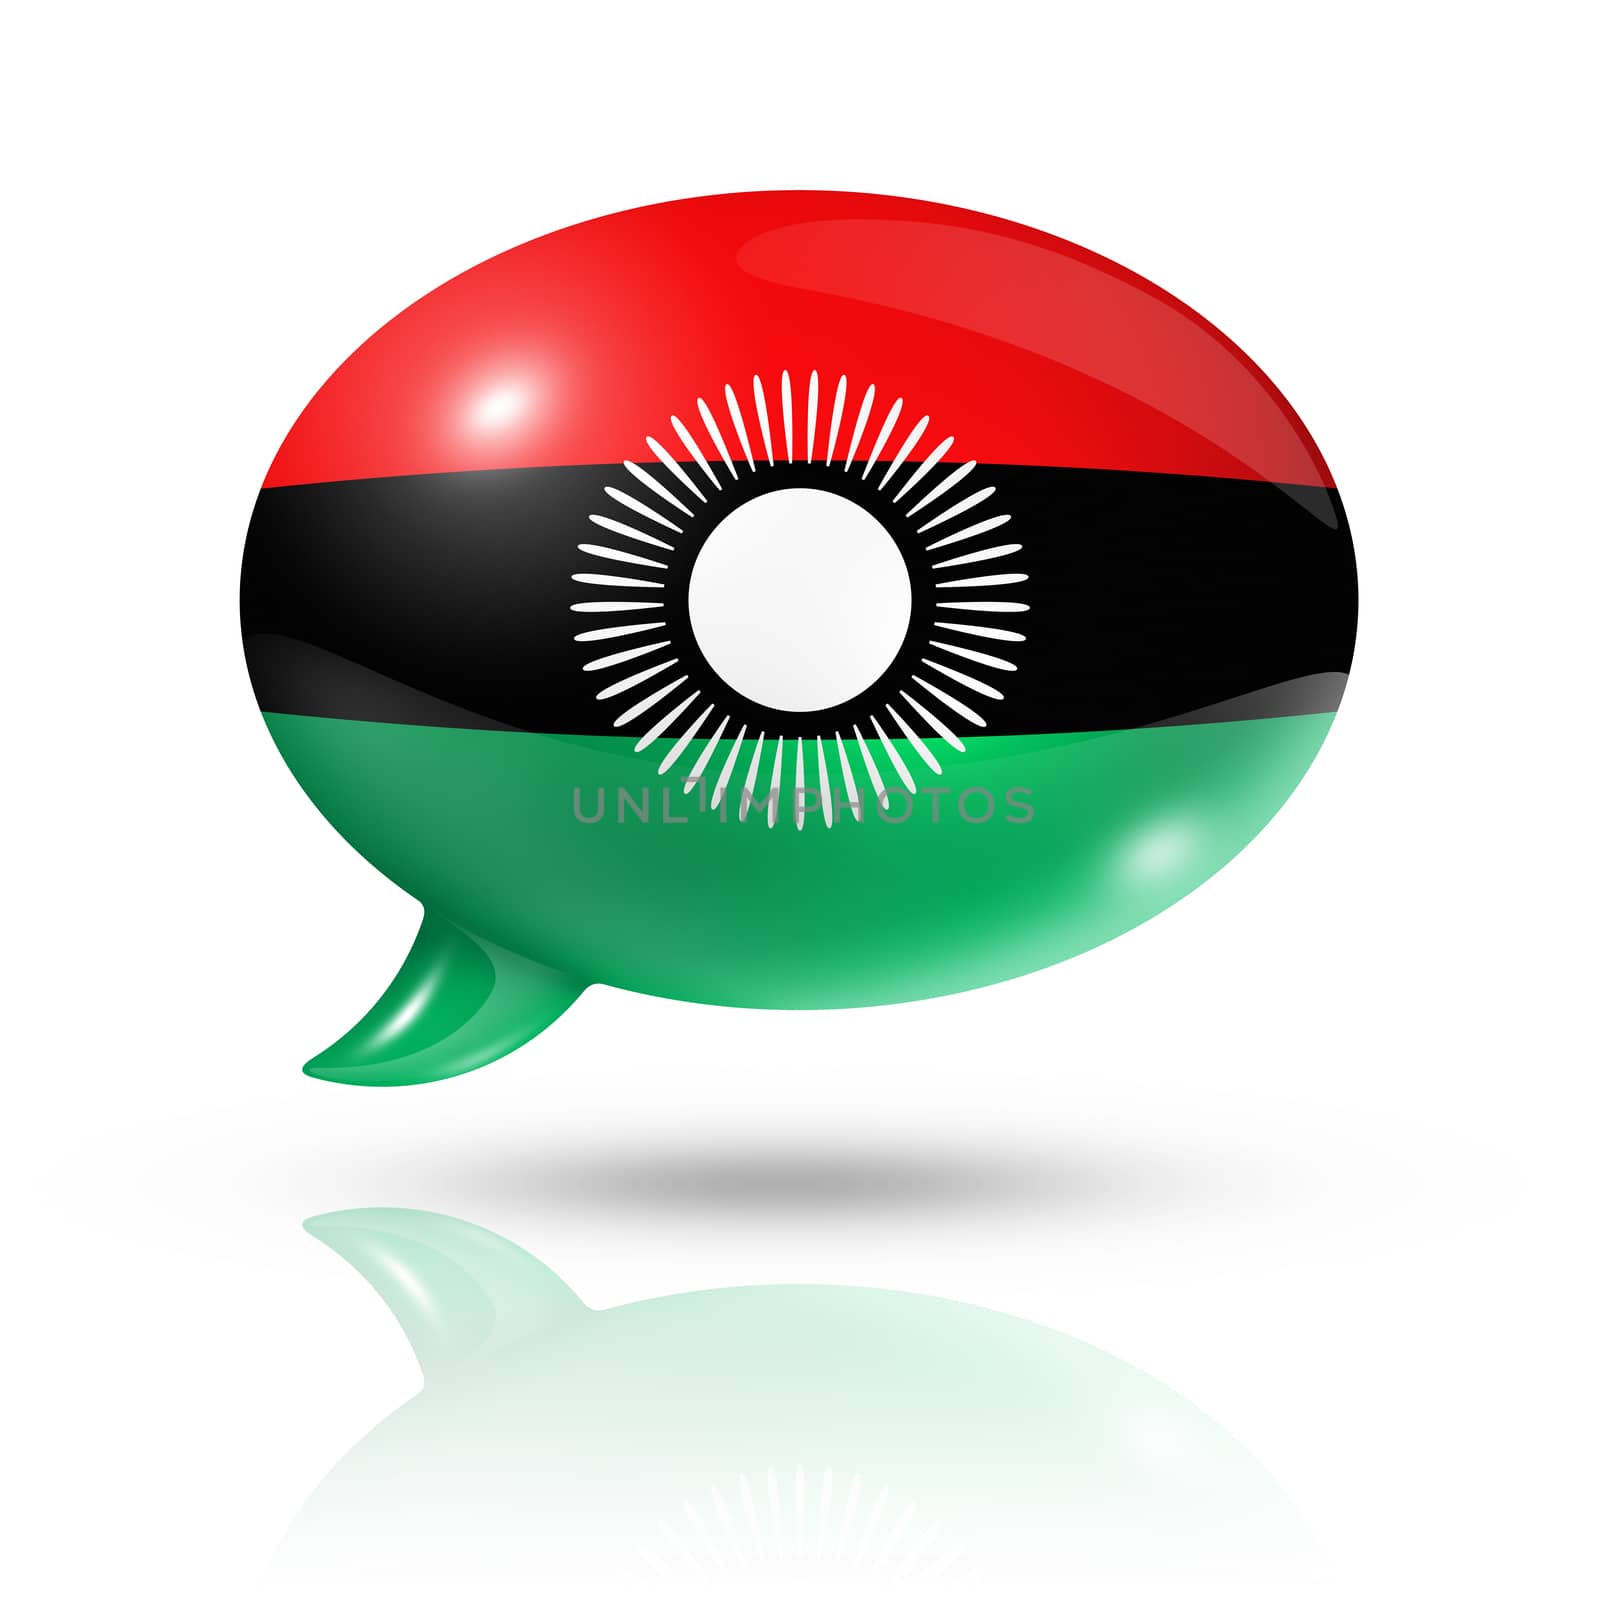 Malawi flag speech bubble by daboost